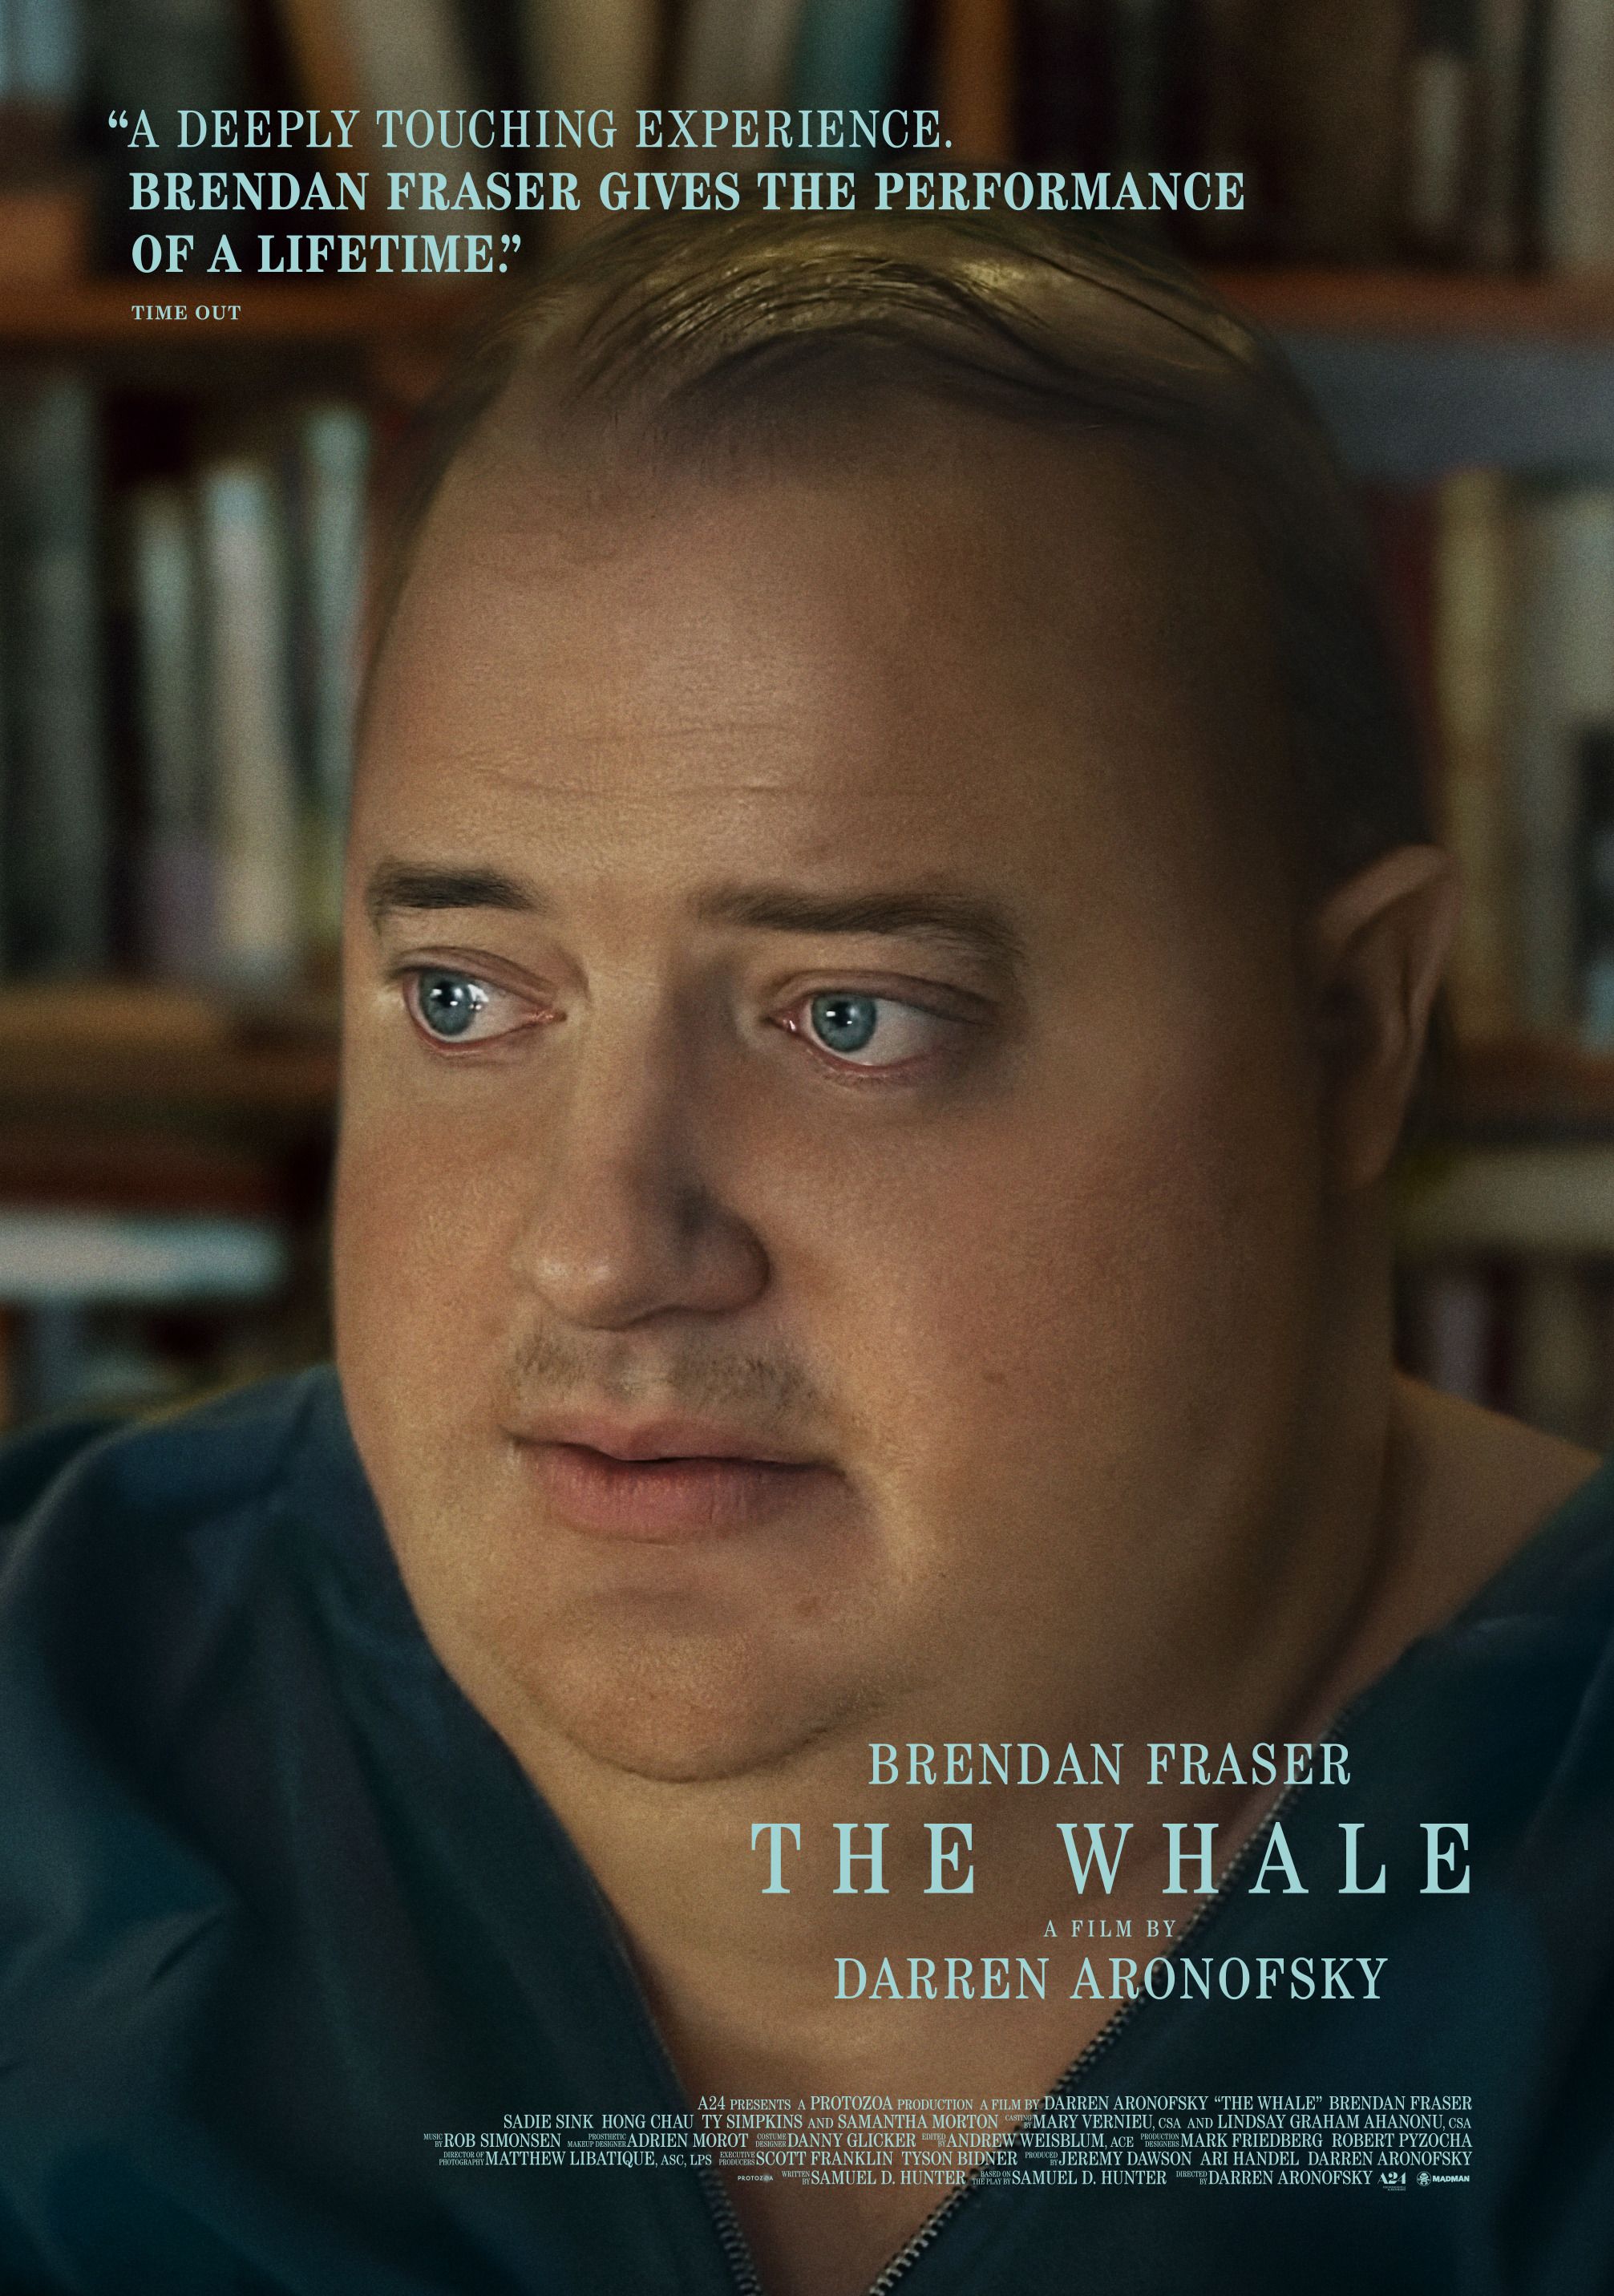 A baleia